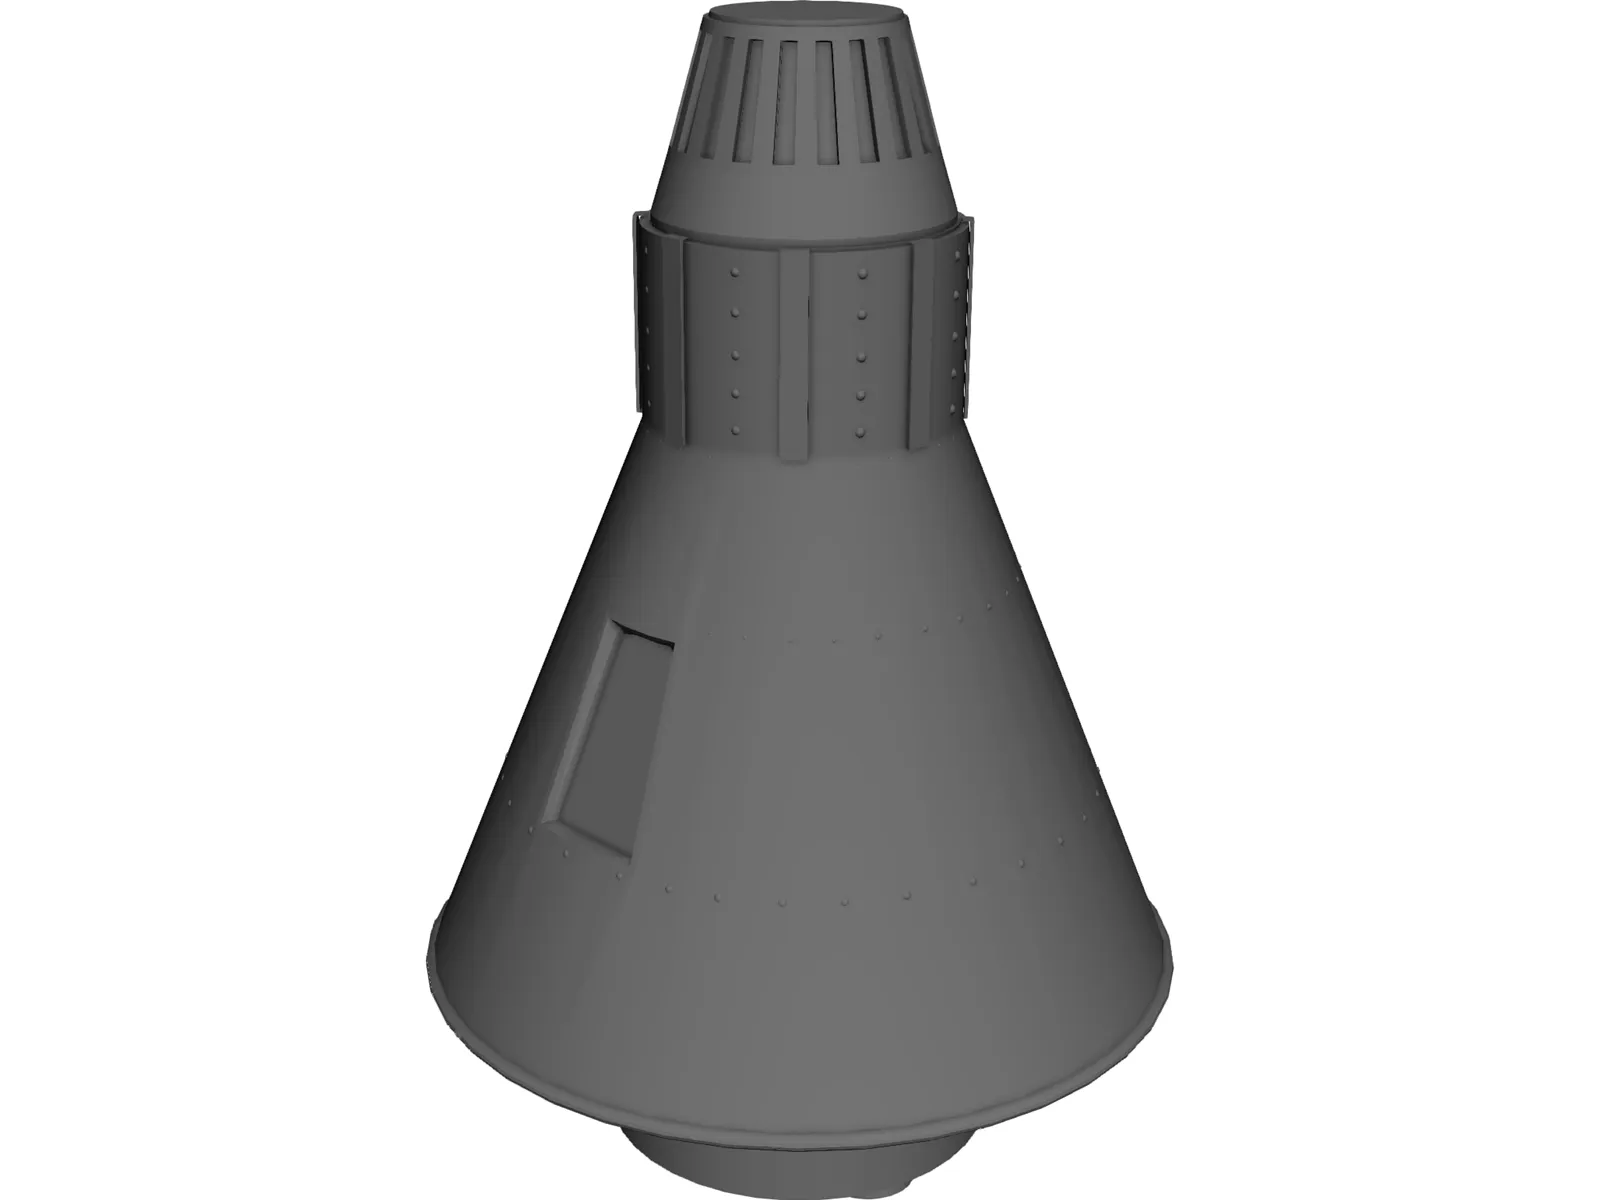 Aurora 7 Spaceship 3D Model